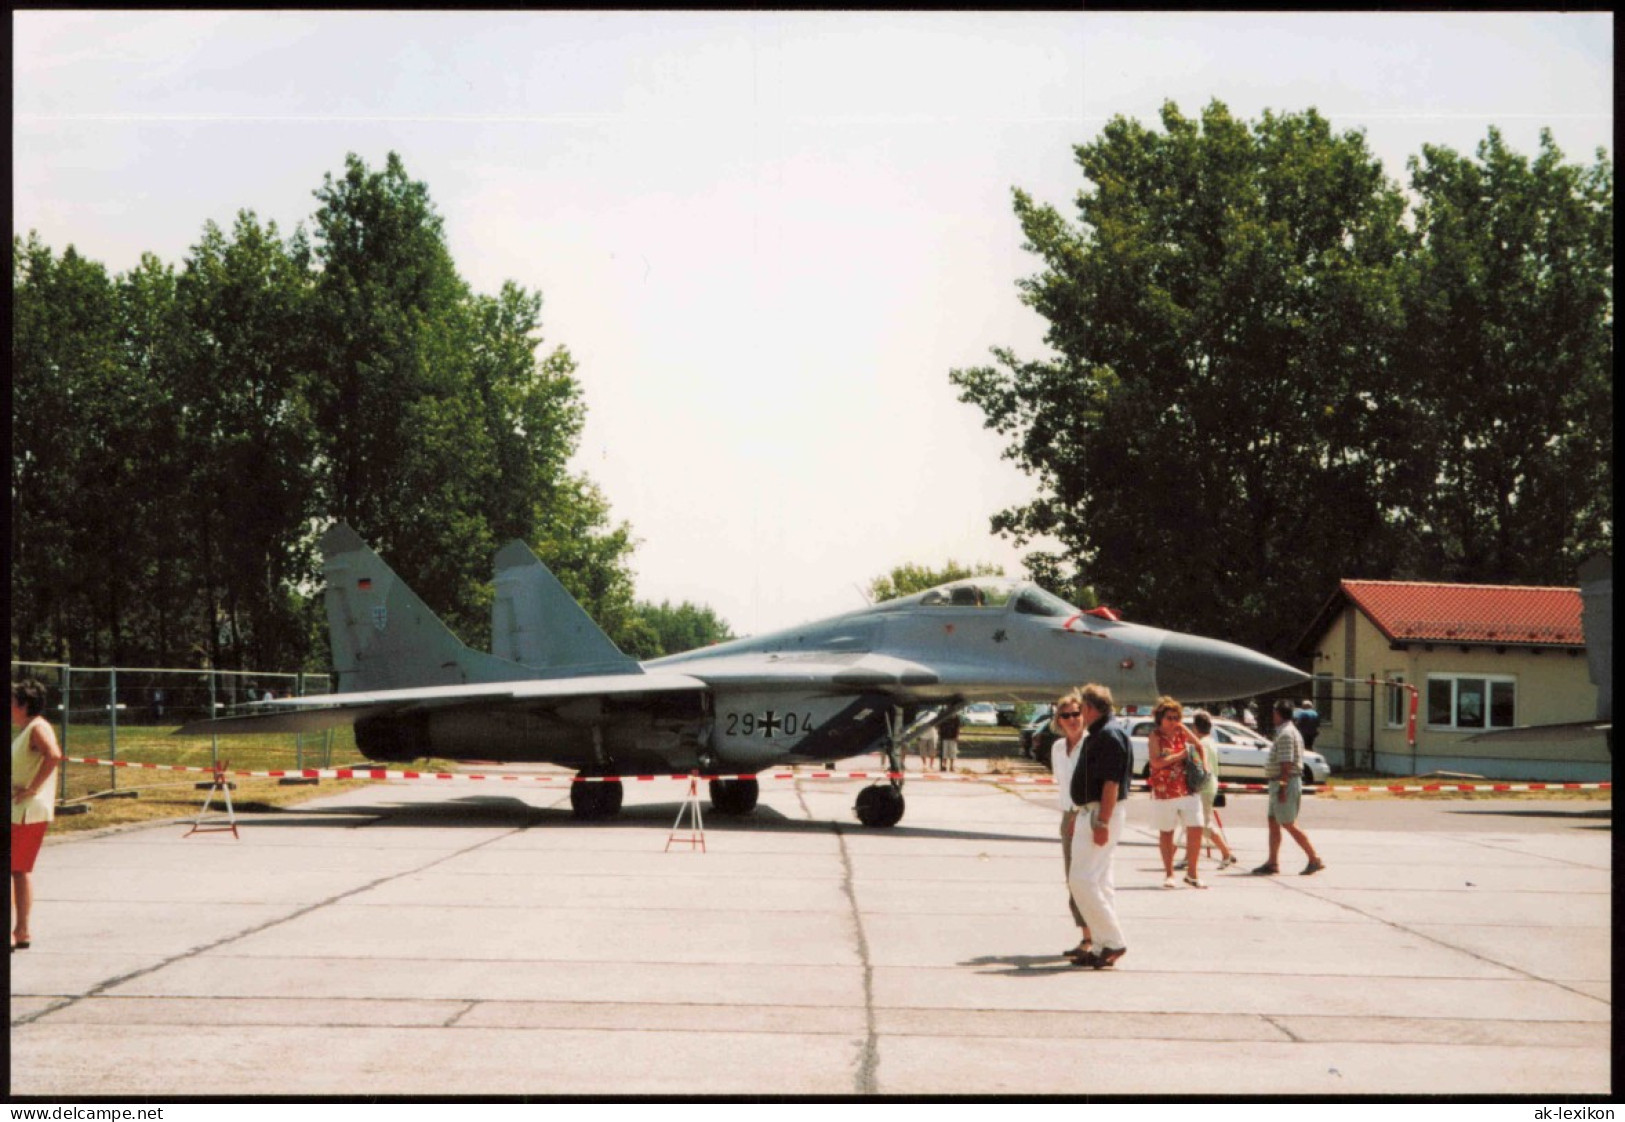 Kampfjet Vom Typ MiG-29 Bundeswehr Flugzeug 1980 Privatfoto - Ausrüstung